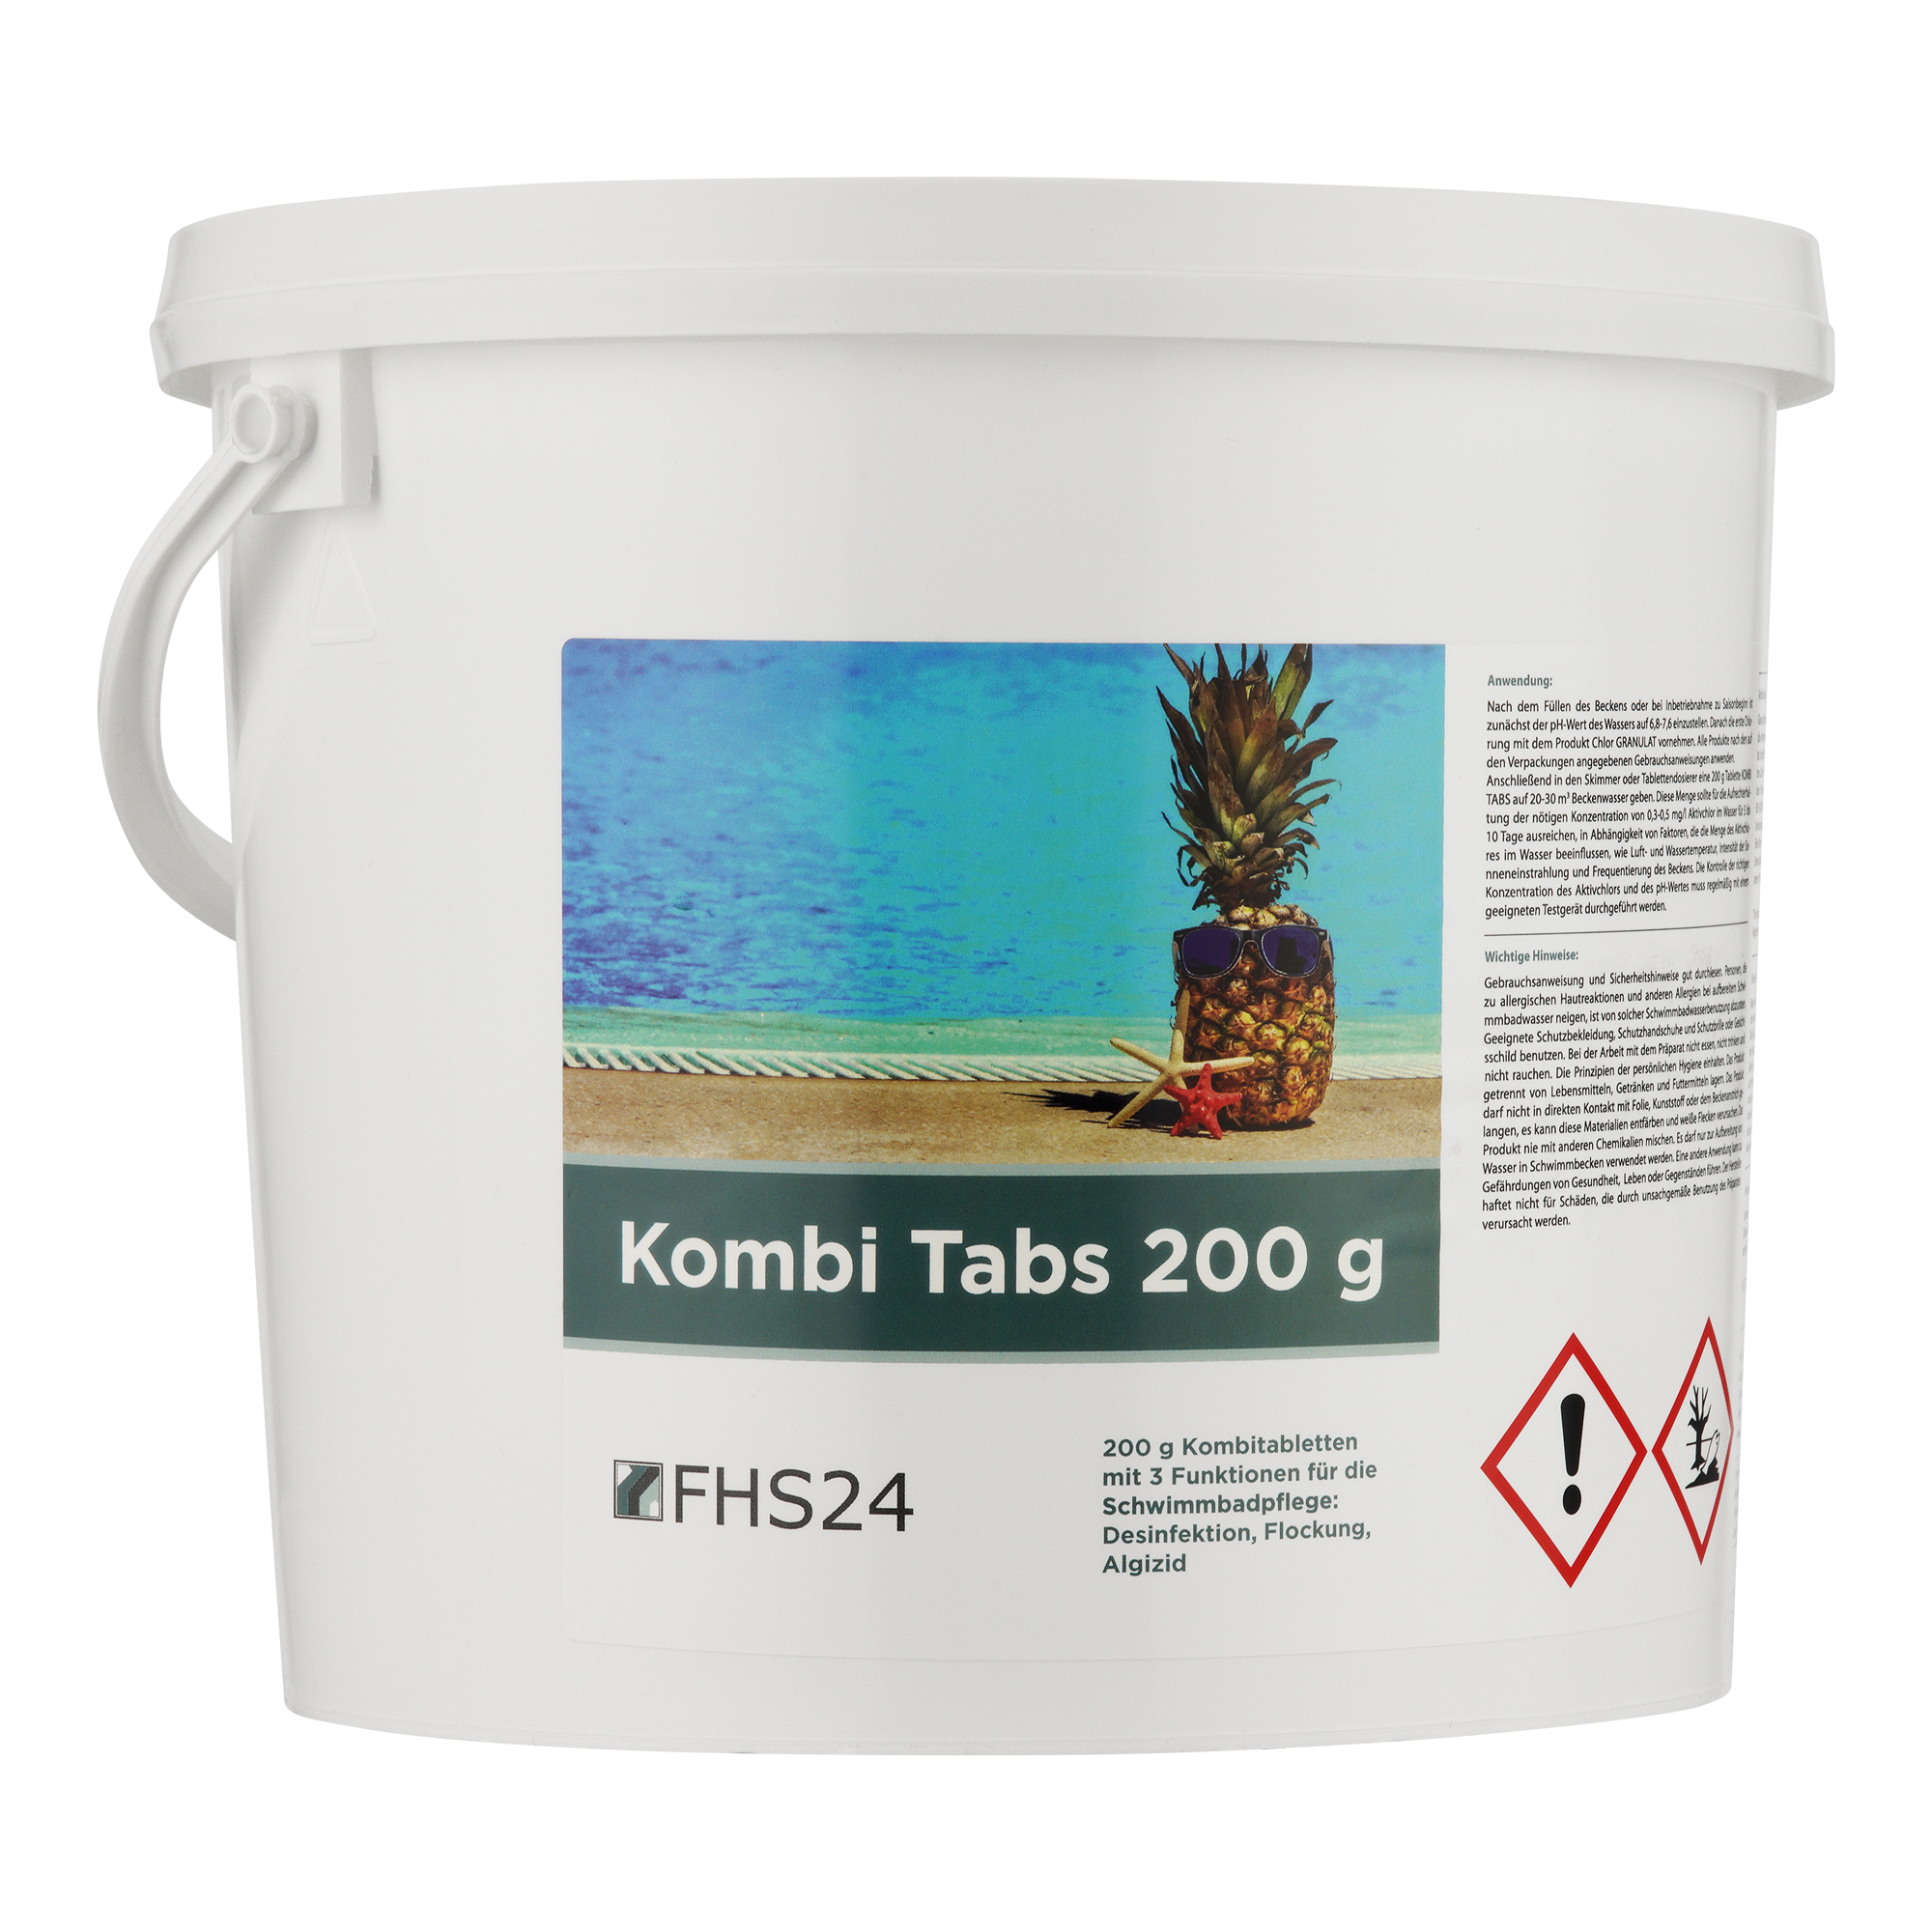 FHS24 Kombi Tabs 200 g 5kg Chlor Kombitabs Multifunktionstabletten Desinfektion Flockung Algizid 